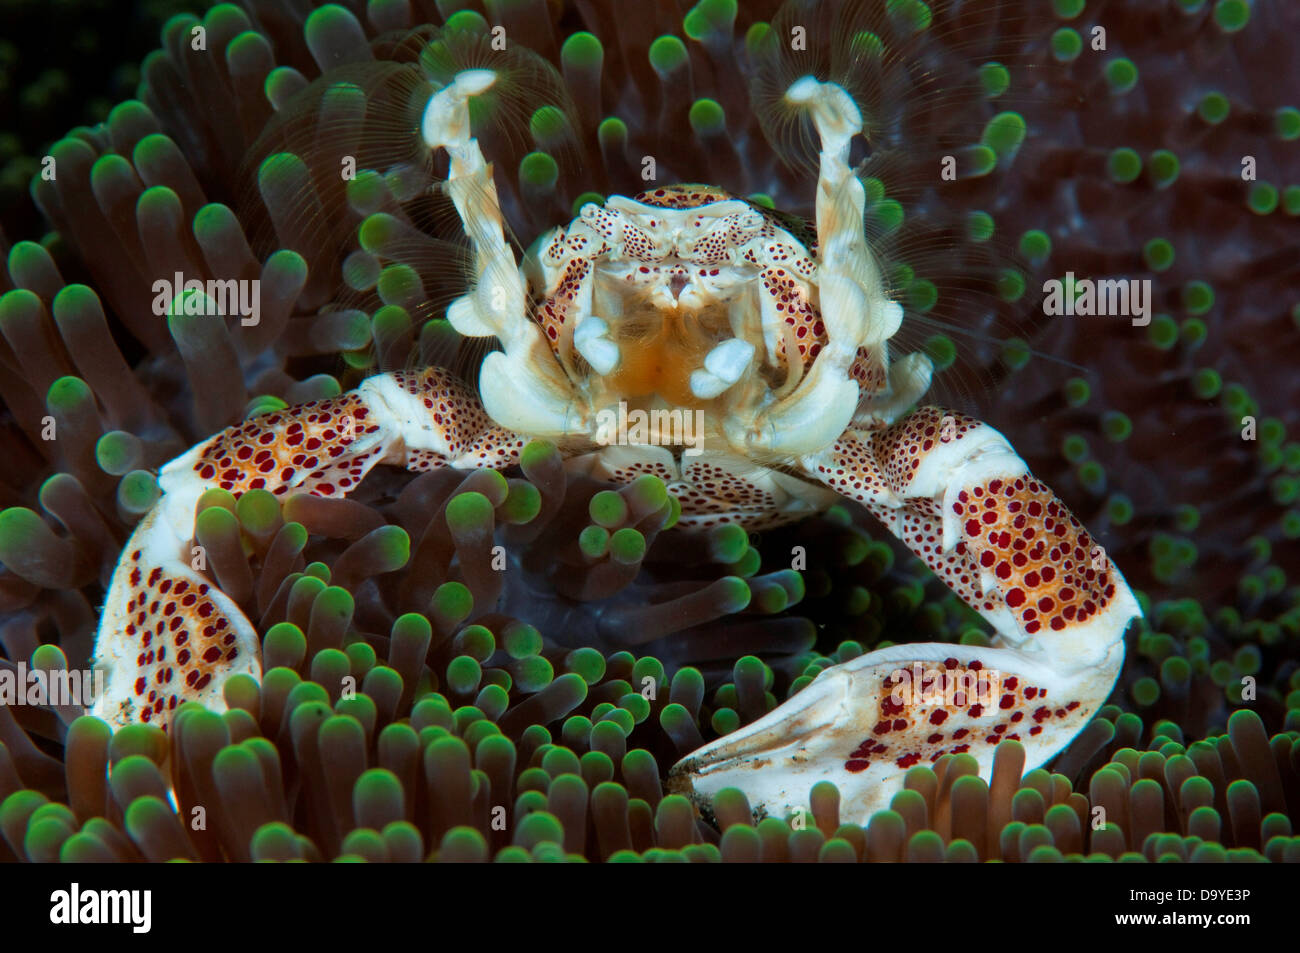 Porcelain Crab, Neopetrolisthes oshimai, On Anemone feeding, Lembeh Strait, Sulawesi, Indonesia Stock Photo